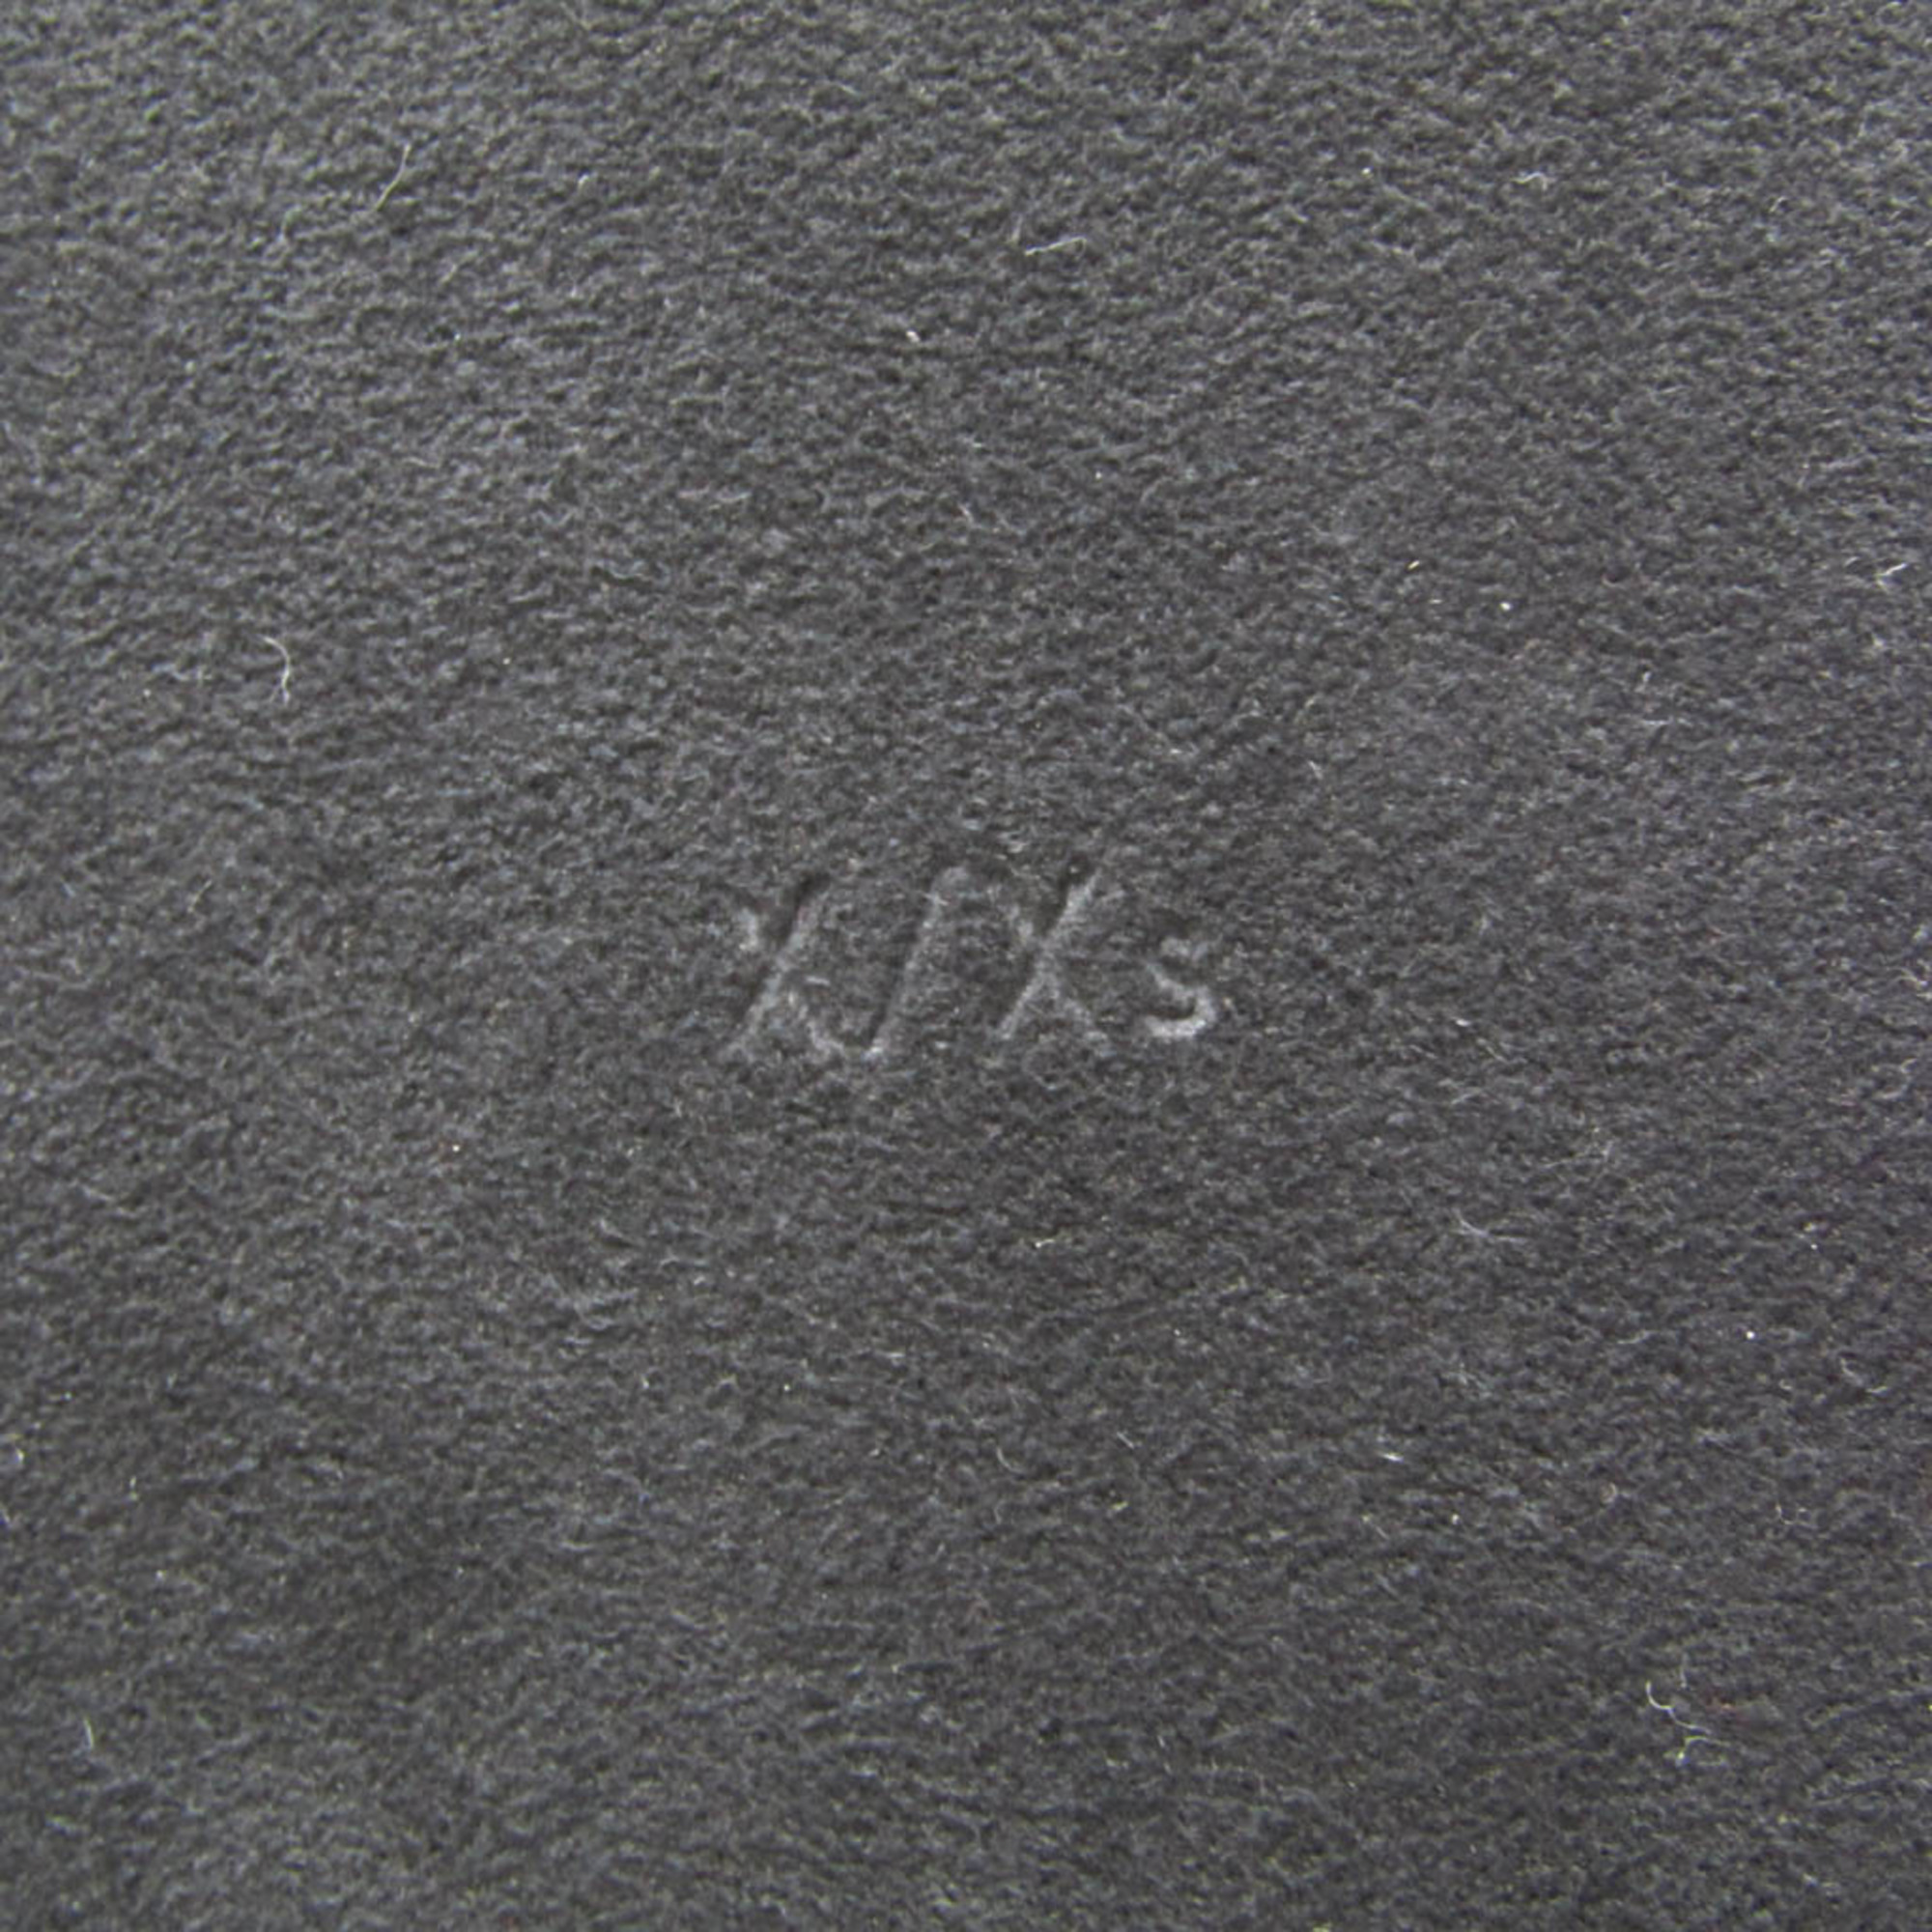 ルイ・ヴィトン(Louis Vuitton) タイガ IPHONE・バンパー XS M67806 モノグラムエクリプス バンパー iPhone X 対応 モノグラムエクリプス,ノワール